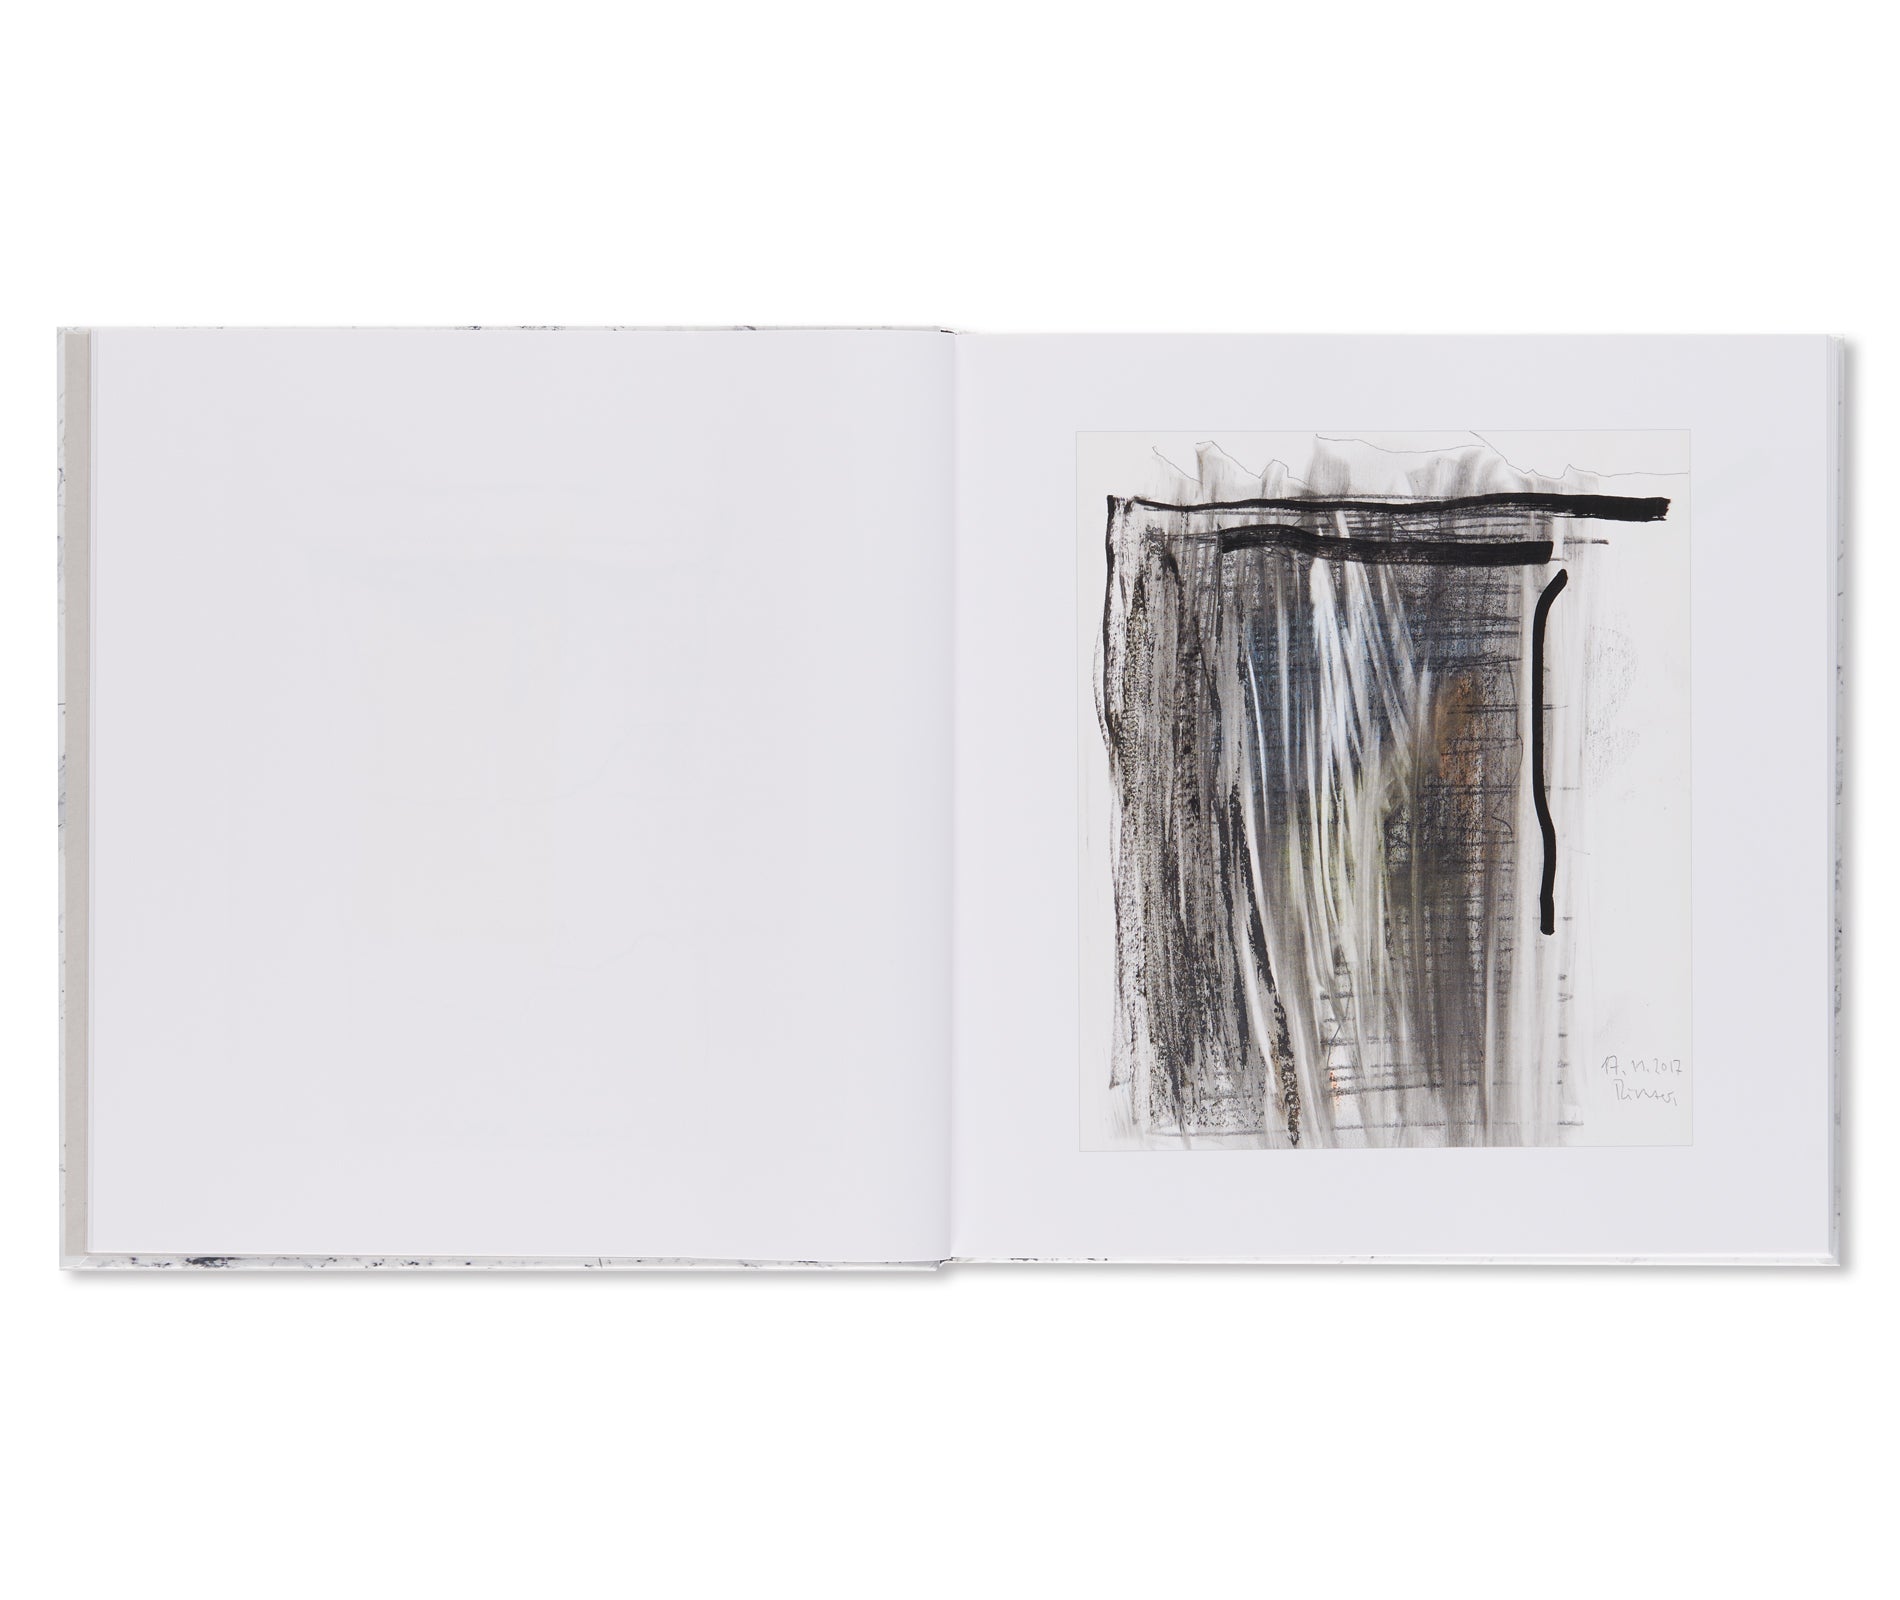 92 ZEICHNUNGEN / 92 DRAWINGS by Gerhard Richter – twelvebooks